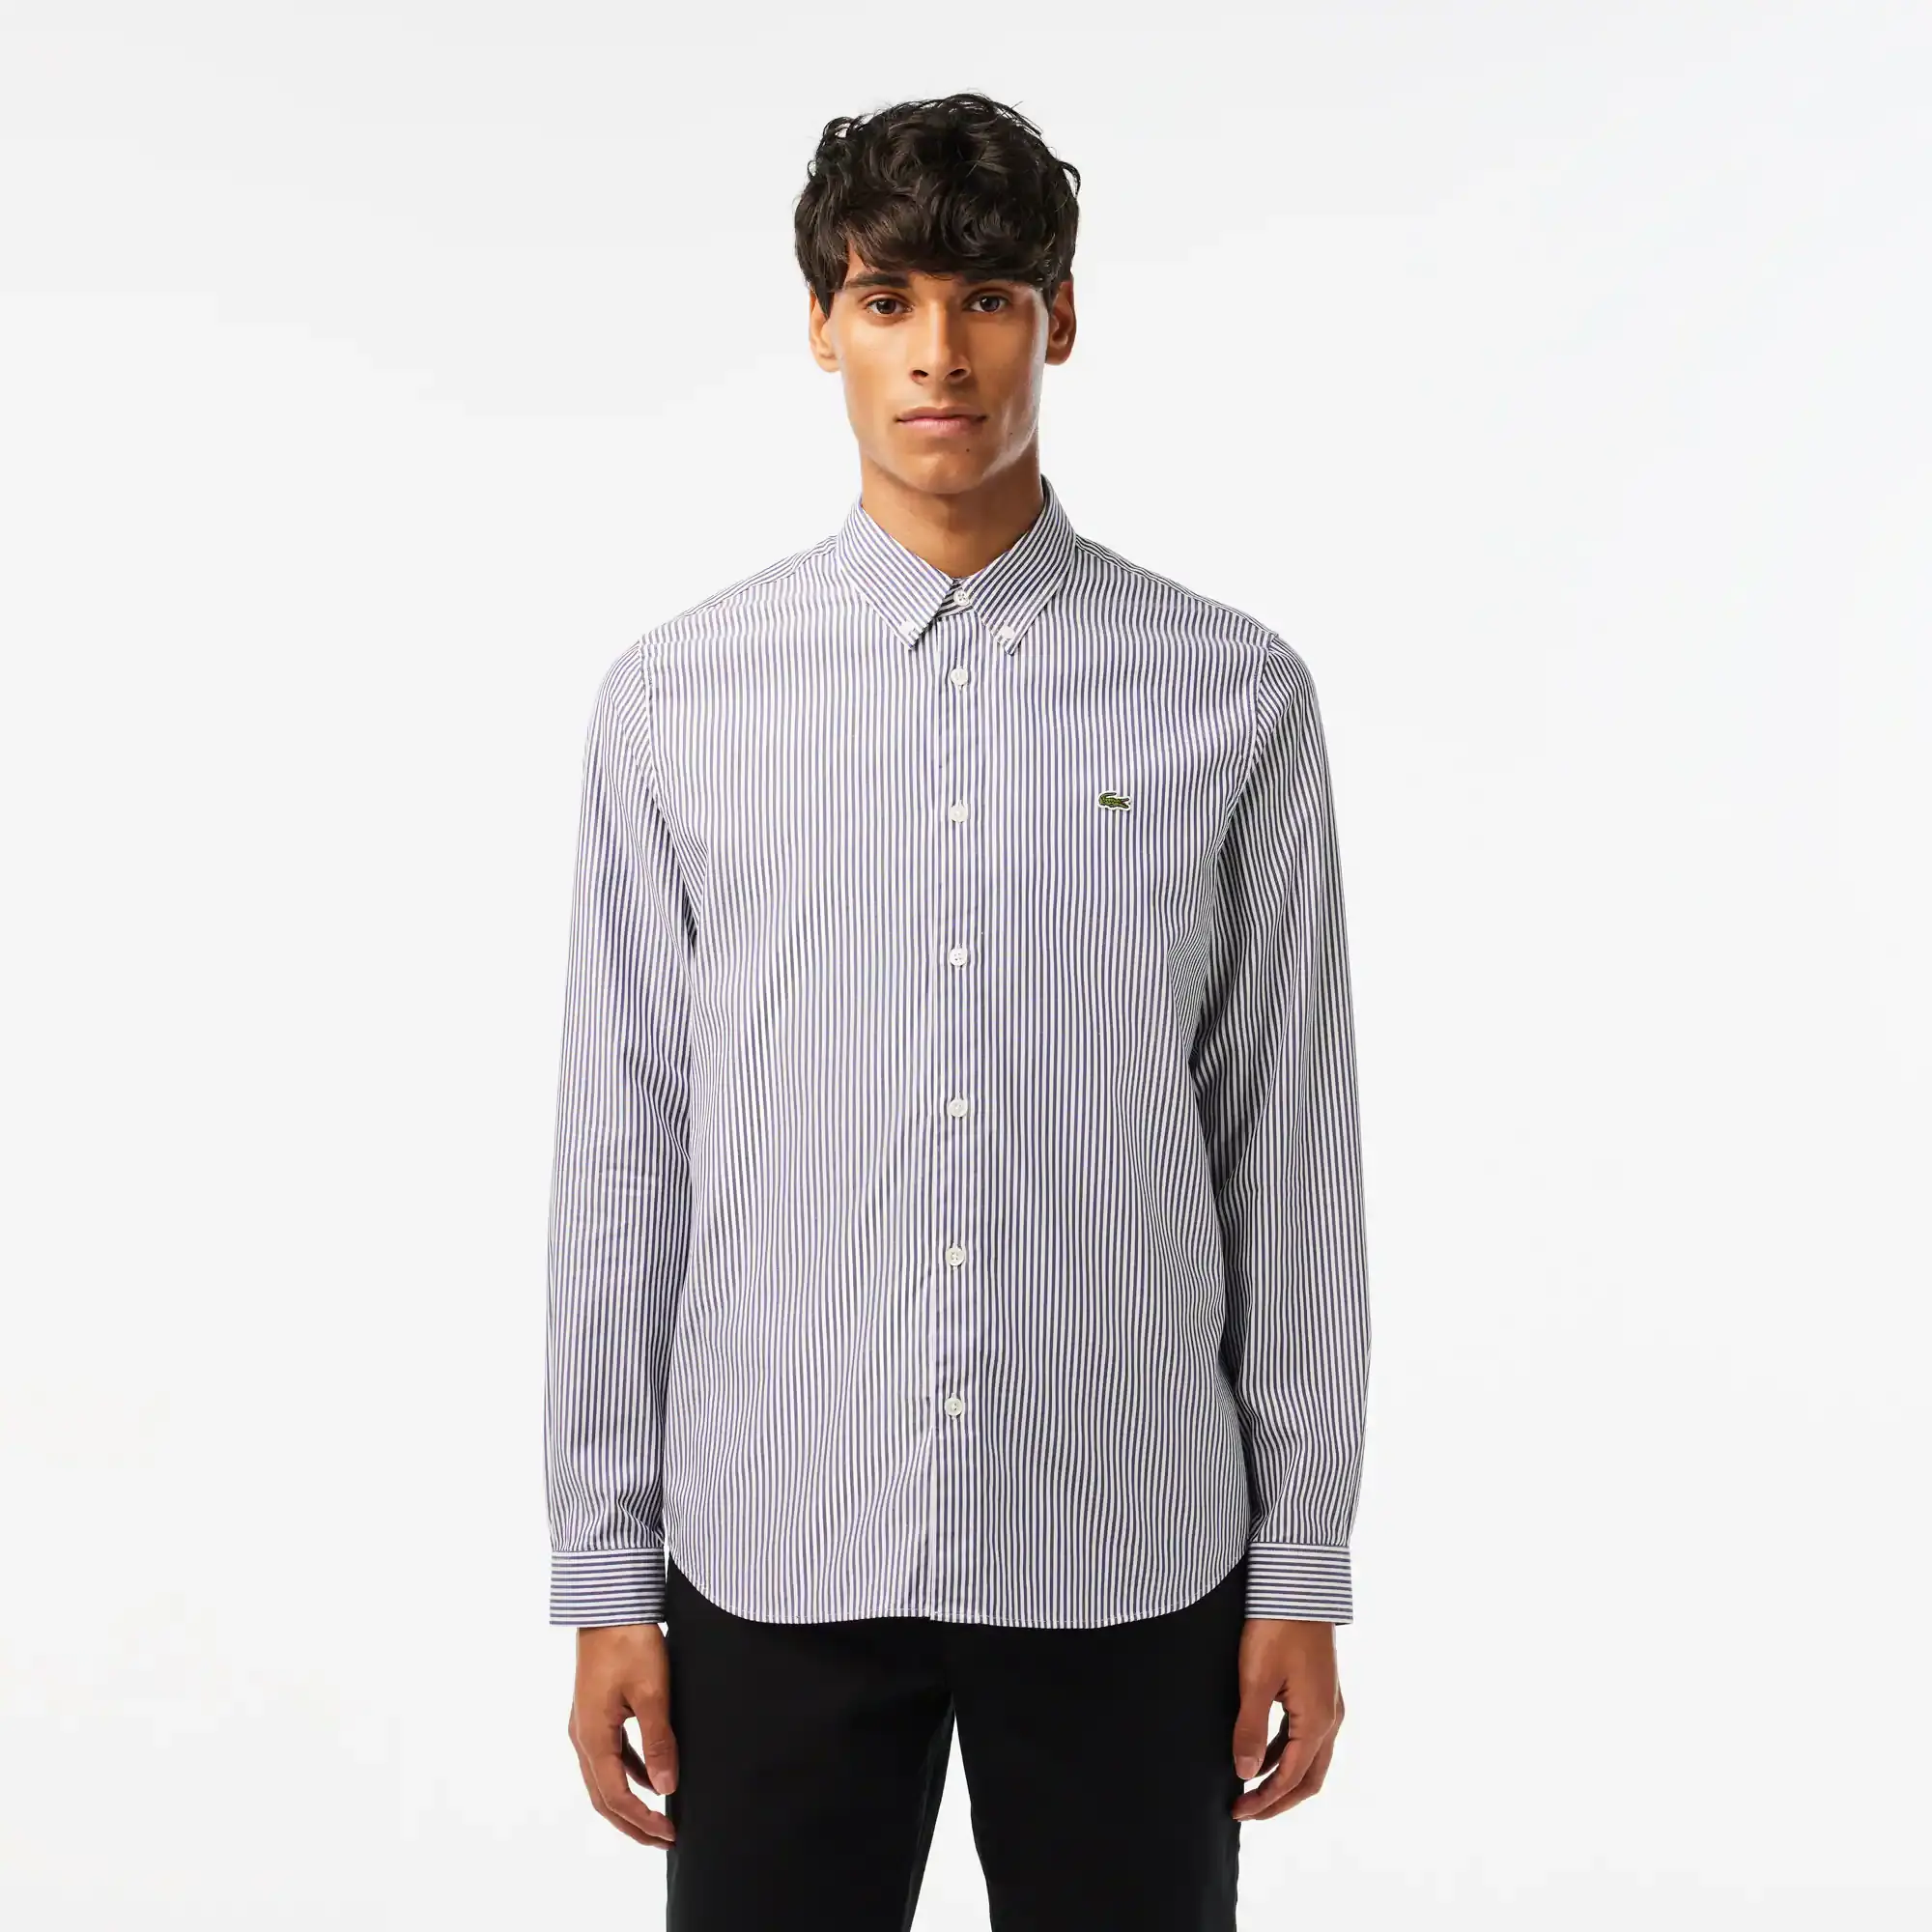 Lacoste Men's Regular Fit Striped Cotton Shirt. 1